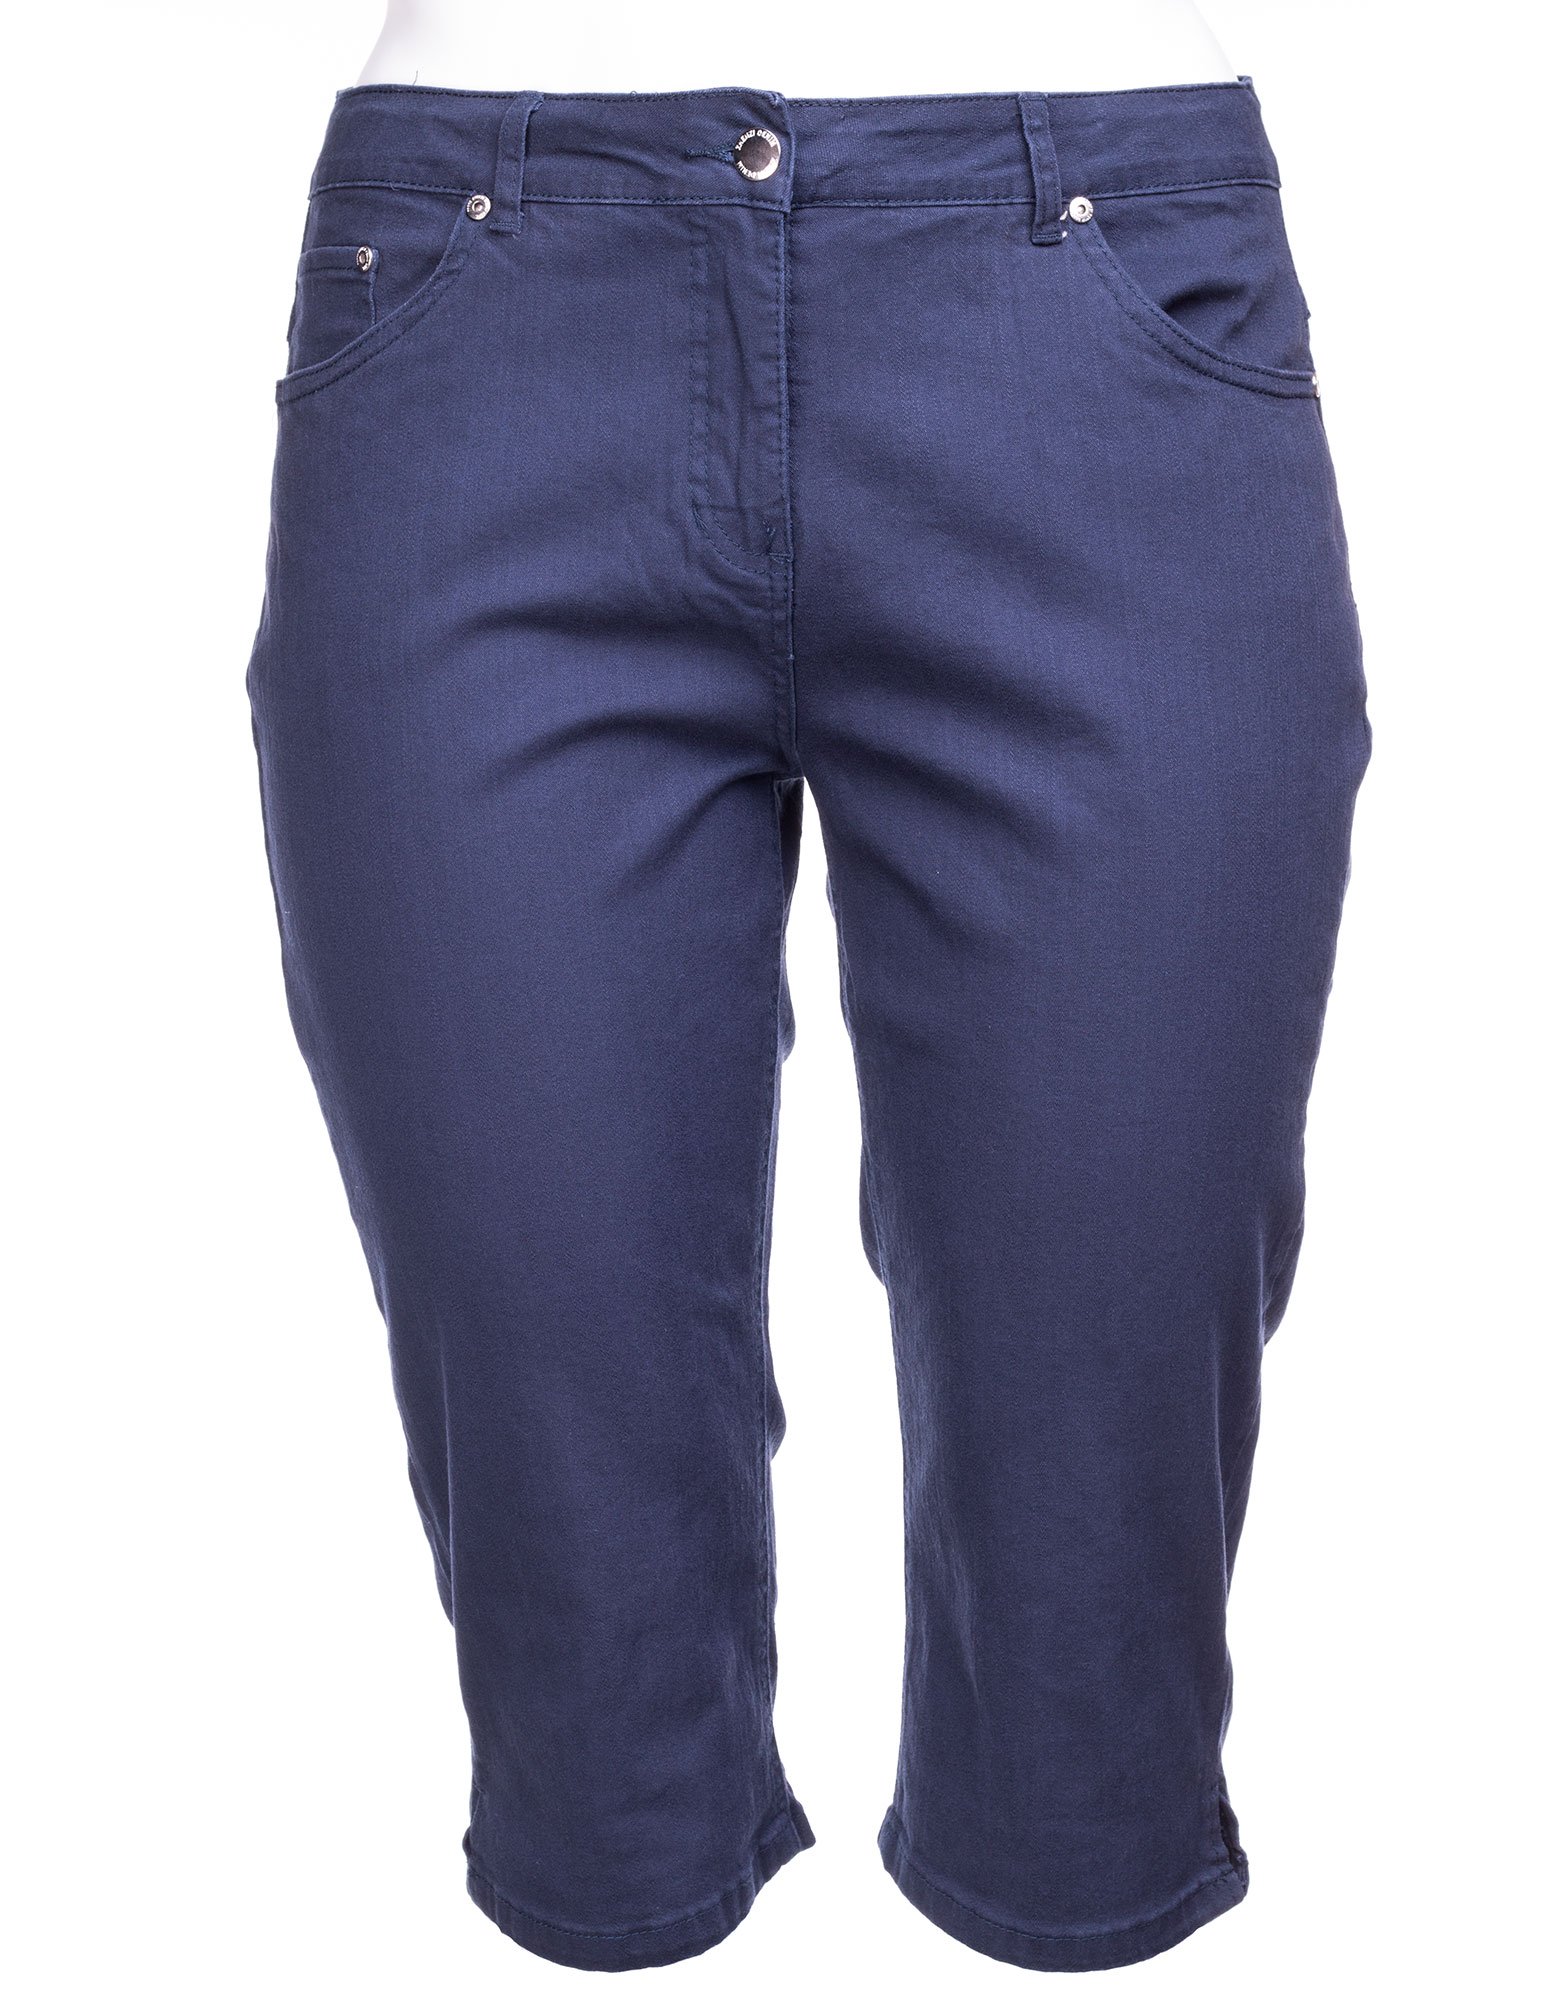 Marineblå capri jeans med høj talje fra Zhenzi